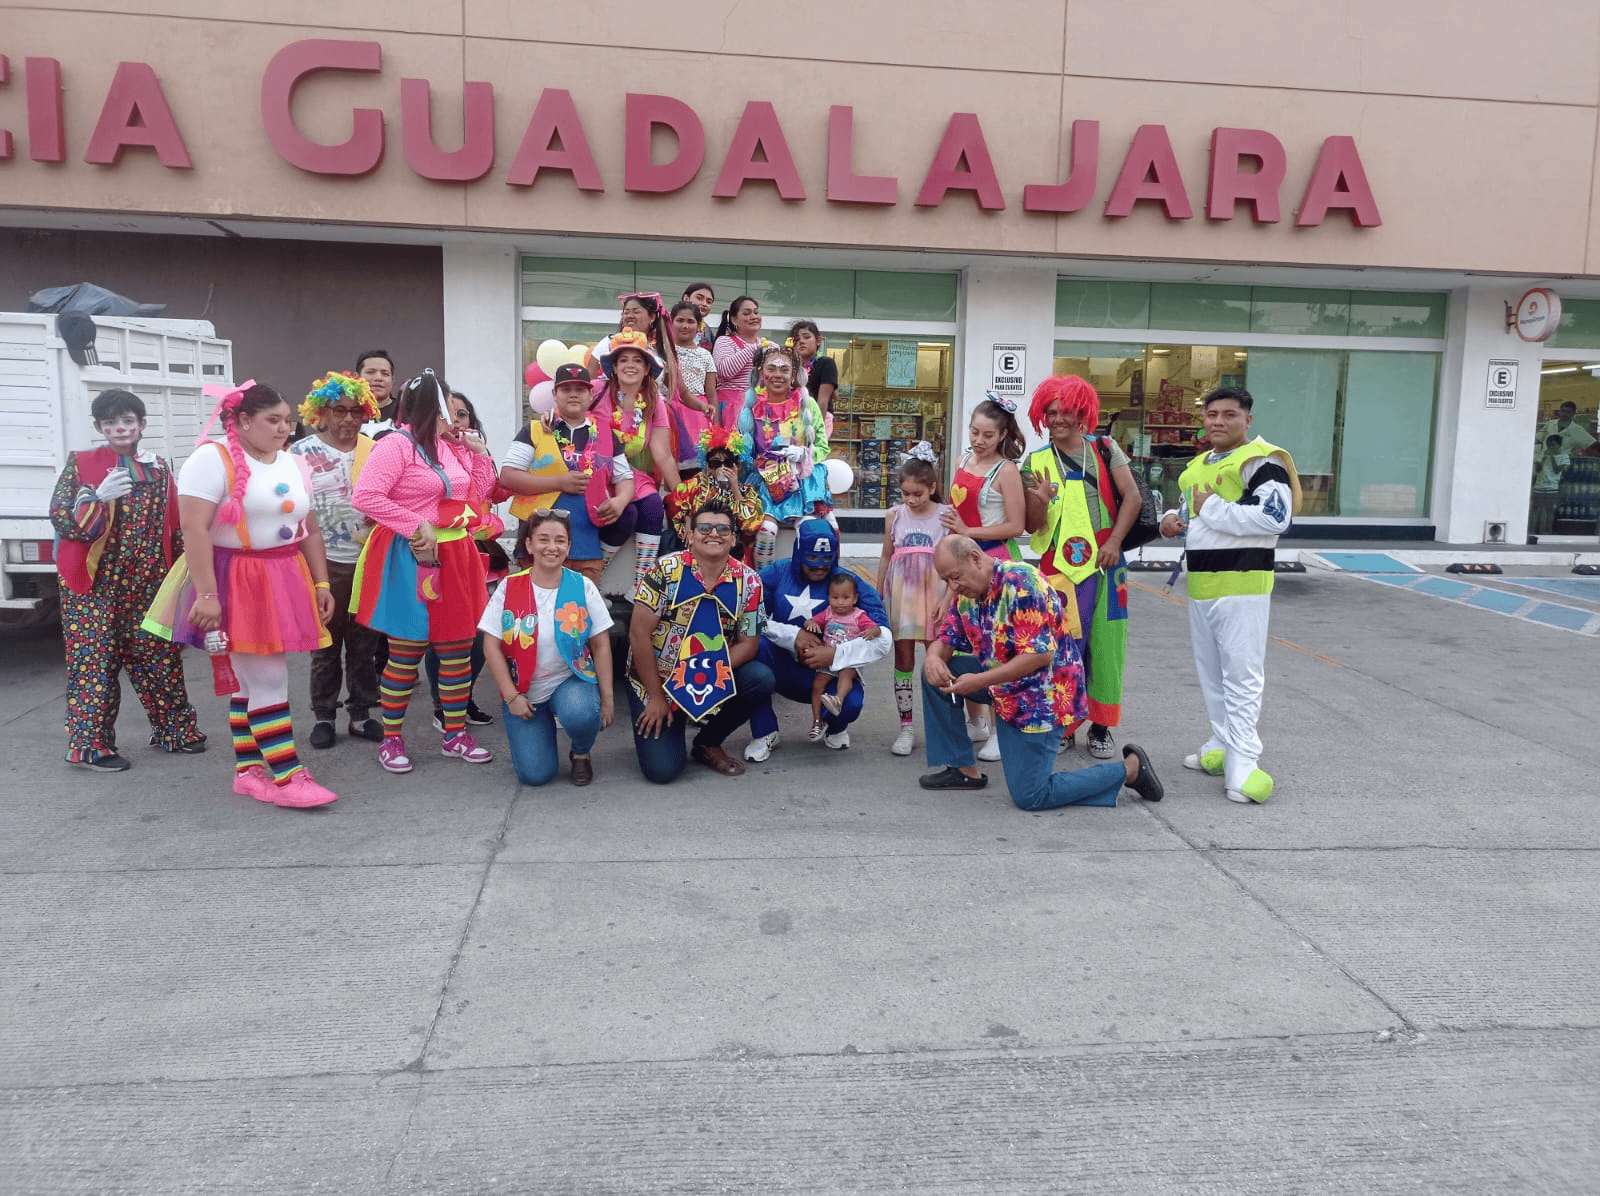 Caravana de juguetes recorre Veracruz en Día del Niño